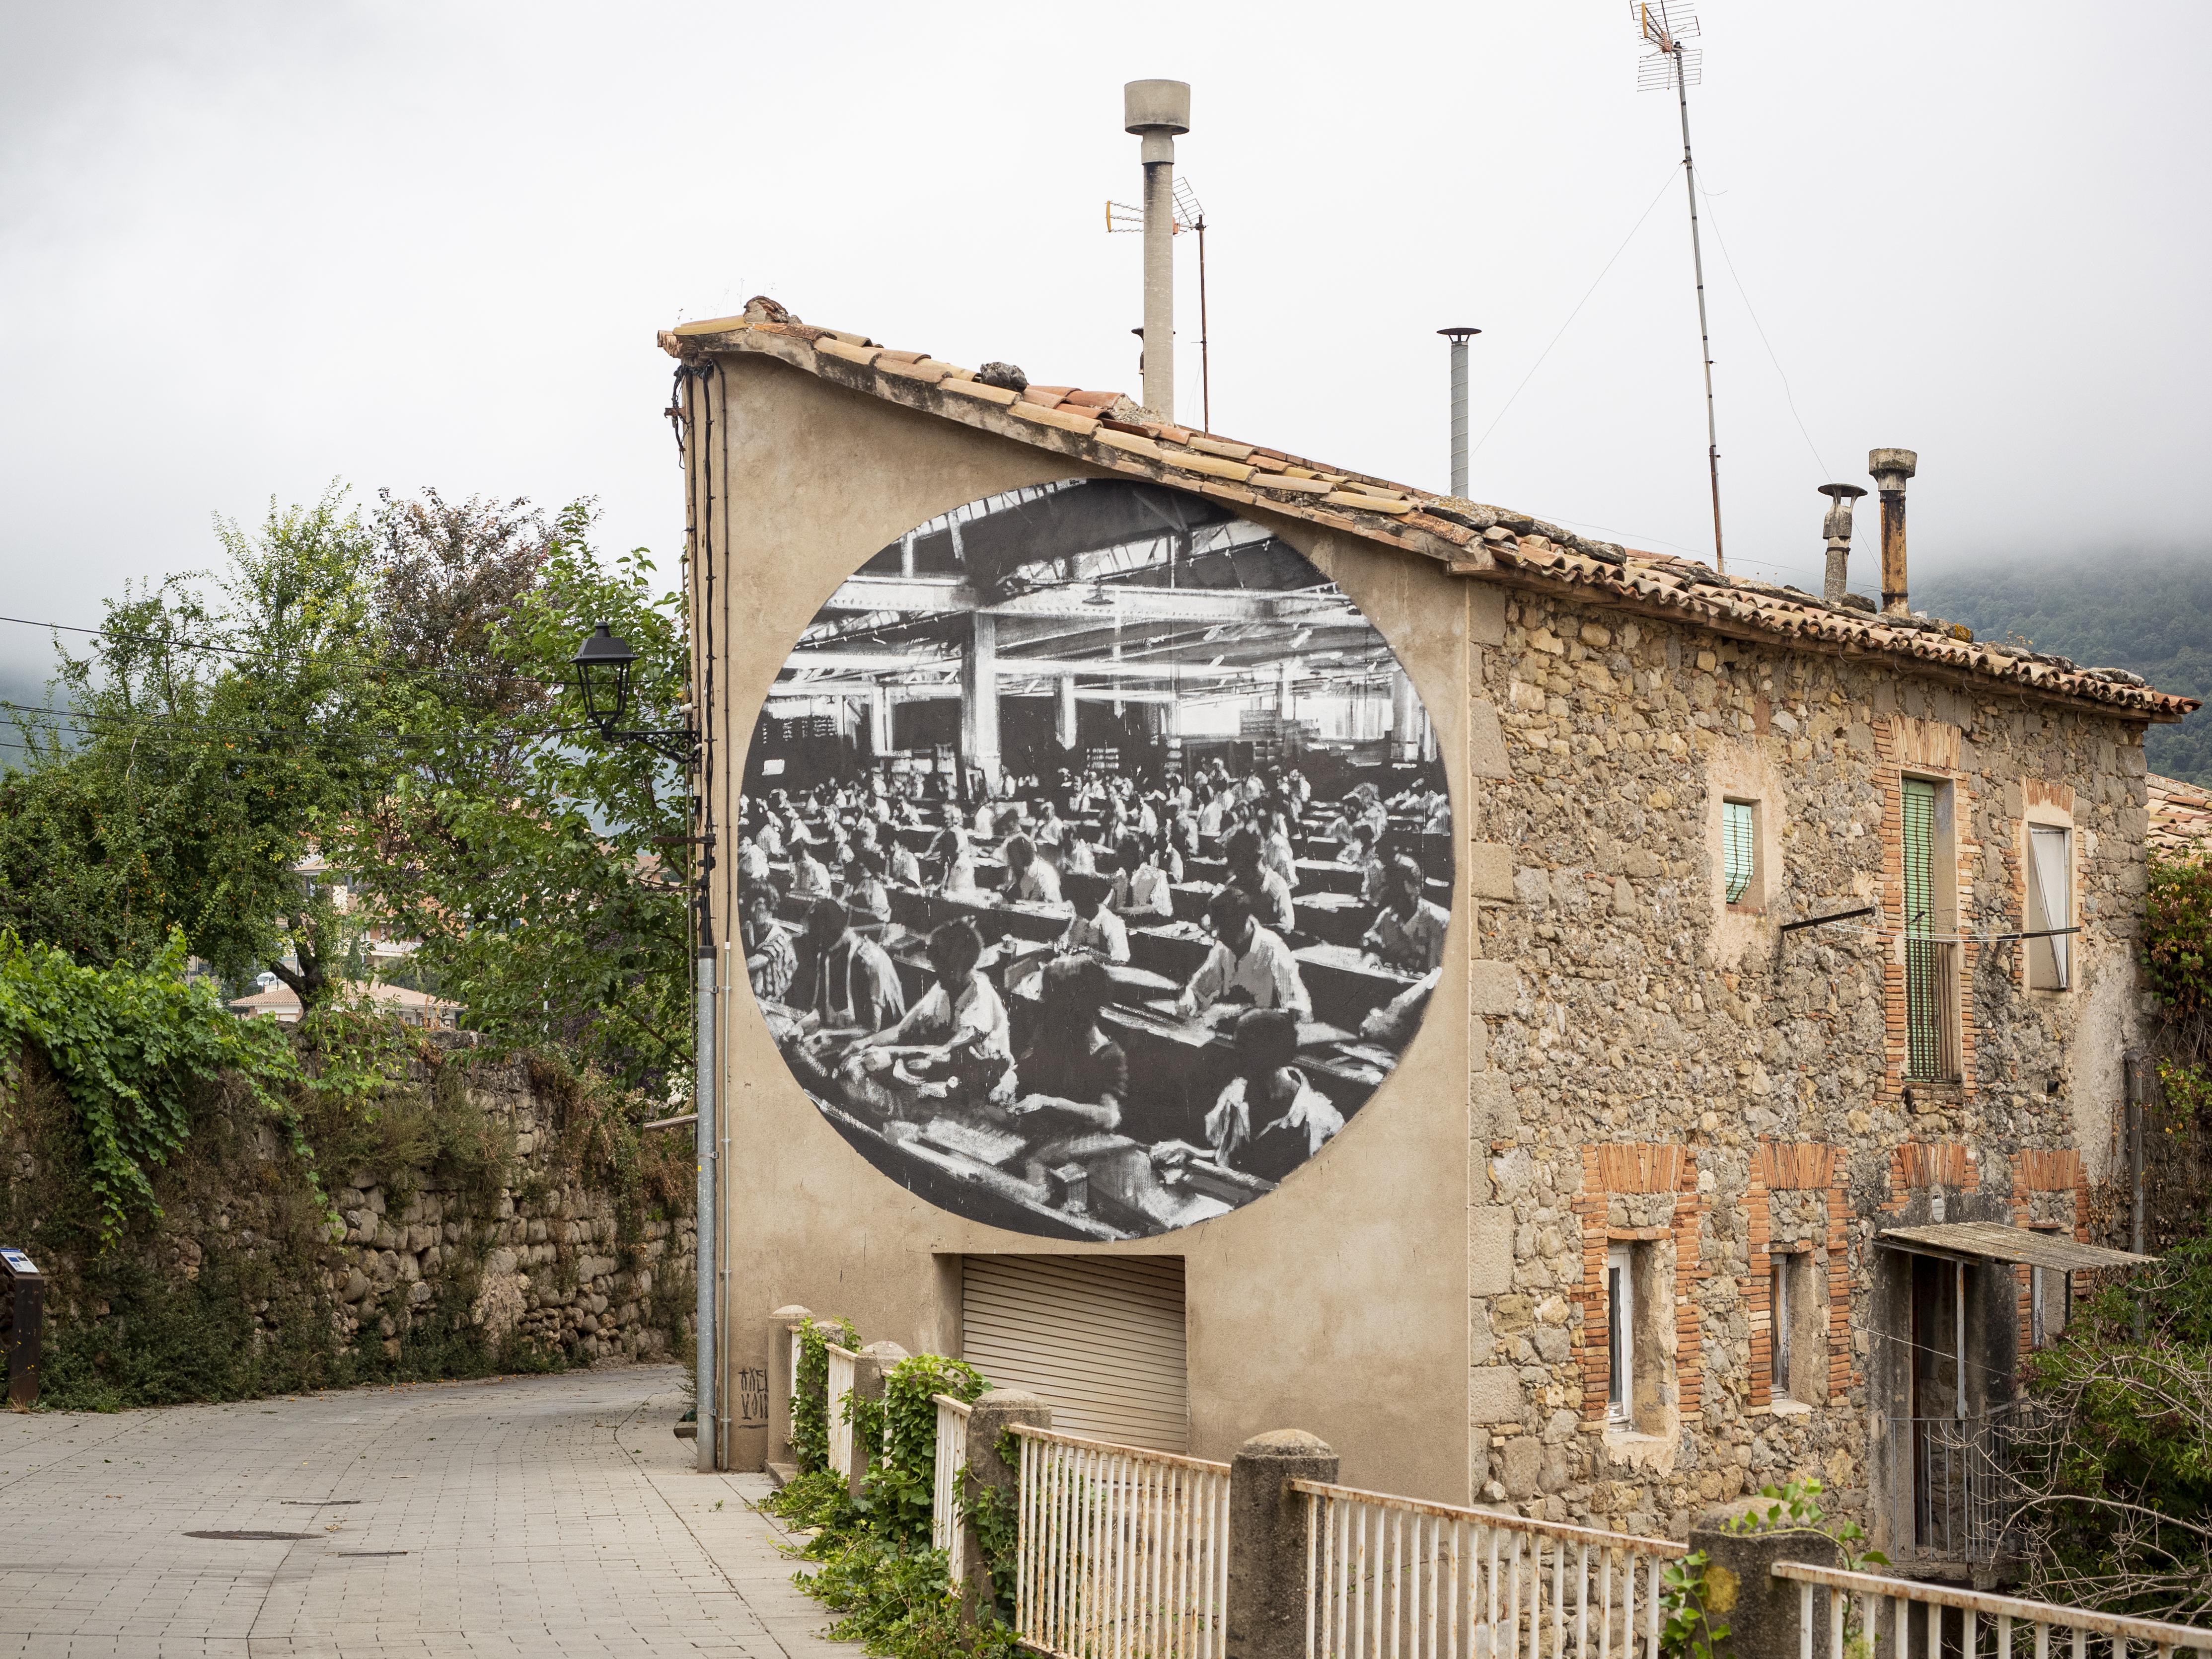 Un mural d'Axel Void homenatja el passat industrial del Berguedà. FOTO: Anna E. Puig